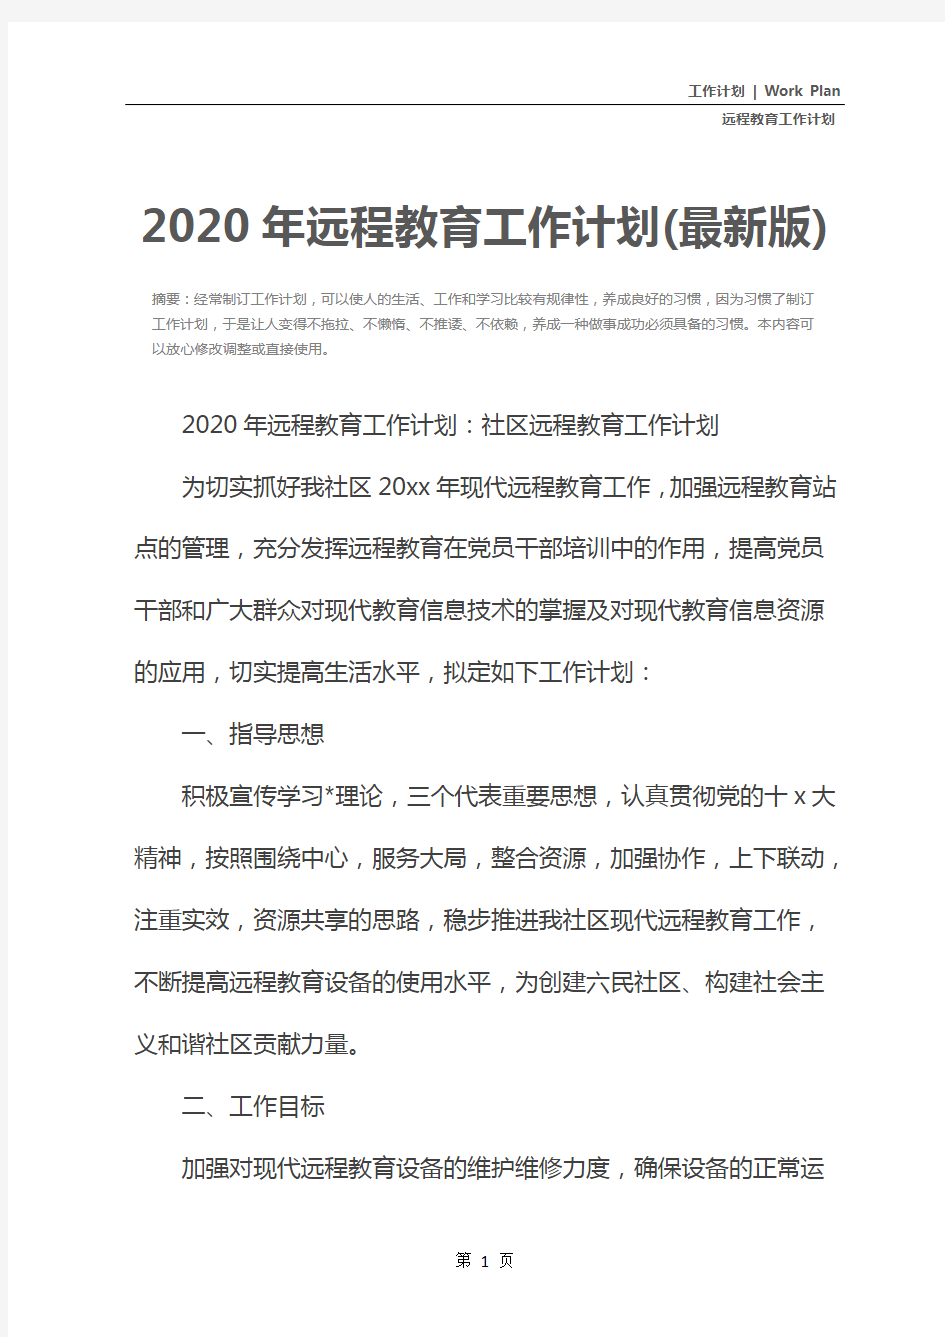 2020年远程教育工作计划(最新版)